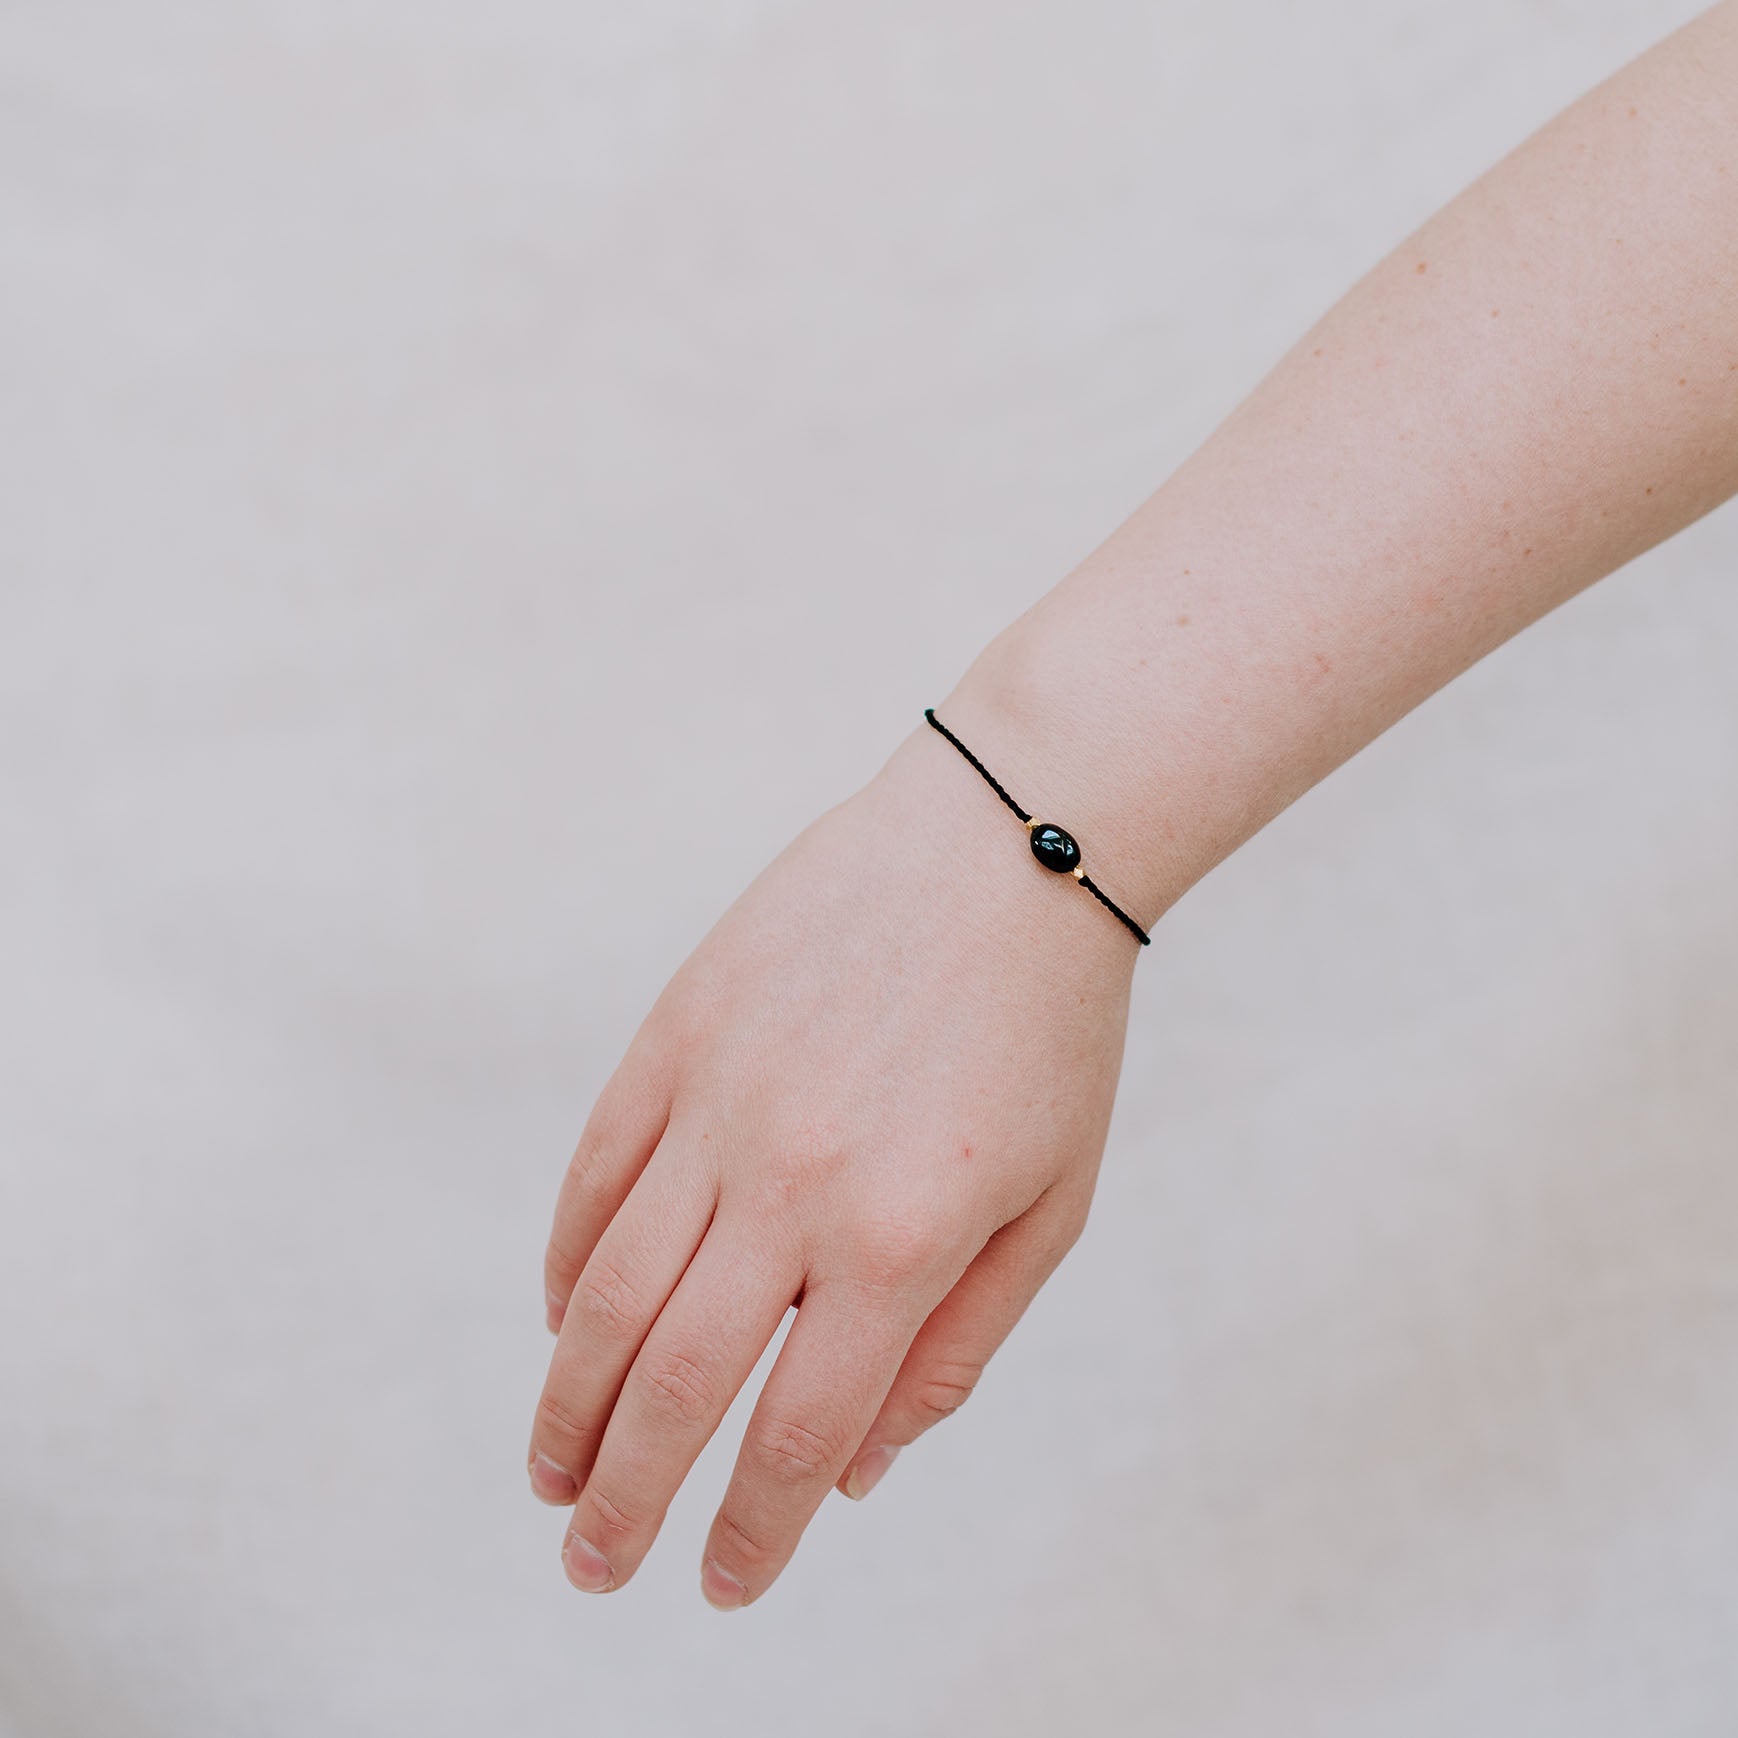 Eine Person trägt das A Beautiful Story Armband mit einem schwarzen Onyx Edelstein und Gold Details. Das Edelsteinarmband ist mit einem schwarzen Baumwollfade gefertigt. Der Edelstein steht für Fokus und Selbstbewusstsein.